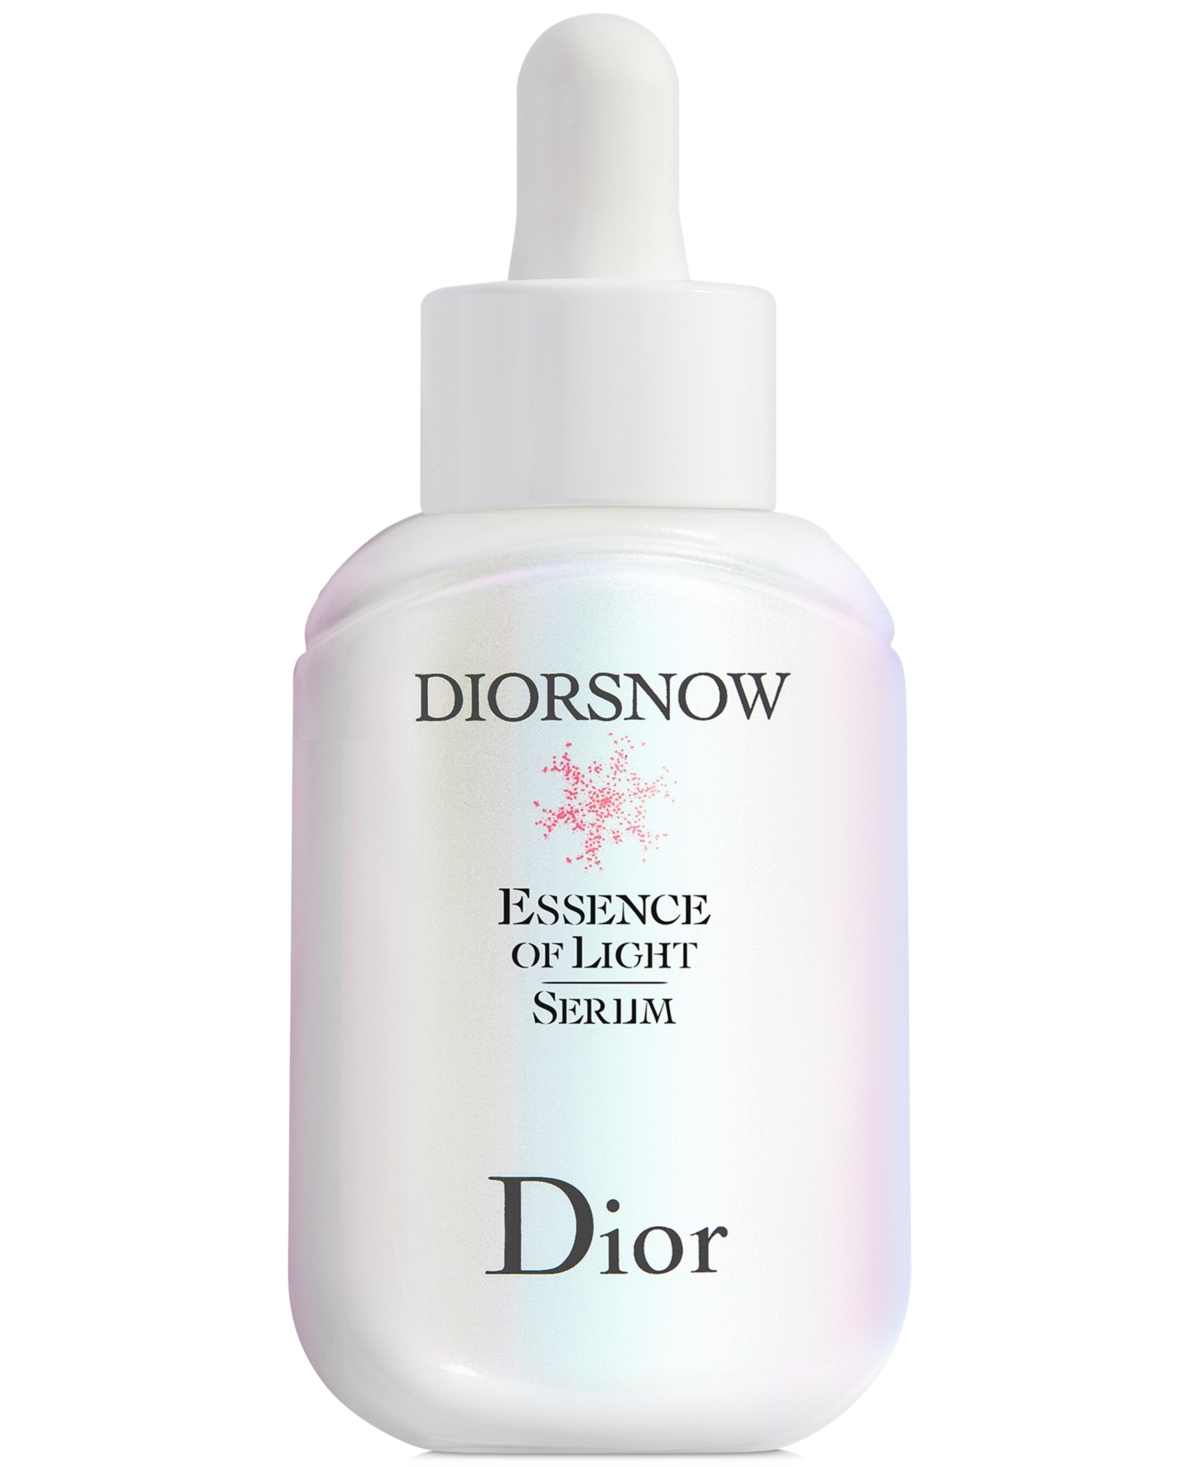 Dior Snow Essence Of Light Serum, 1.7-oz. In No Color